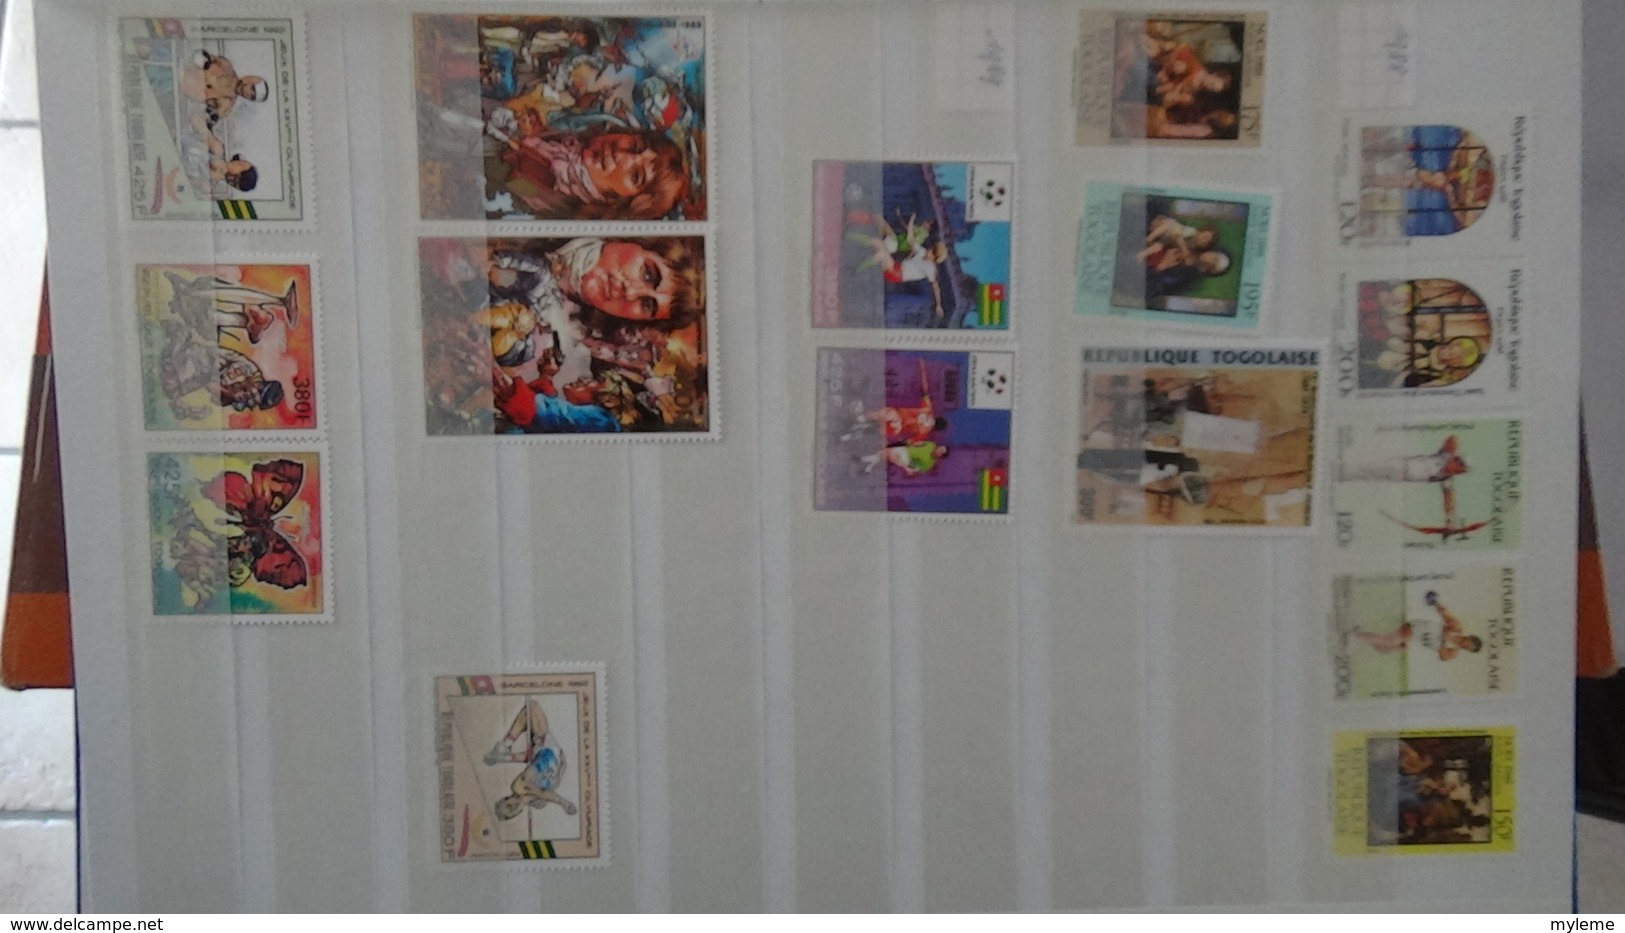 C92 Très belle collection timbres et blocs ** du Tchad et du Togo dont bonnes petites valeurs !!!